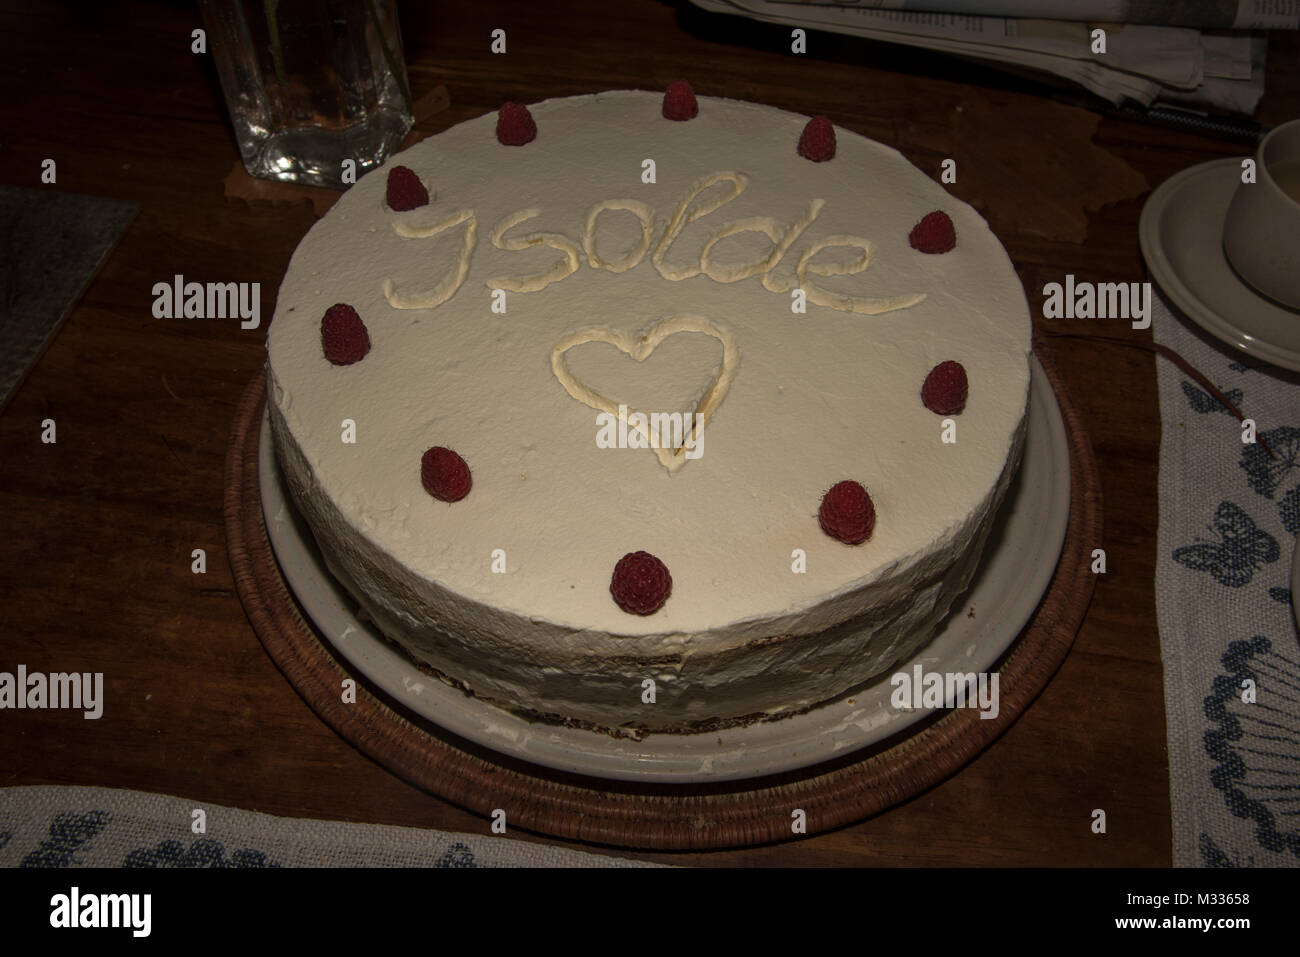 A home made cake is served with decorative ornamentic elements.  Eine selbstgebackene Torte  mit einer netten Verzierung. Stock Photo